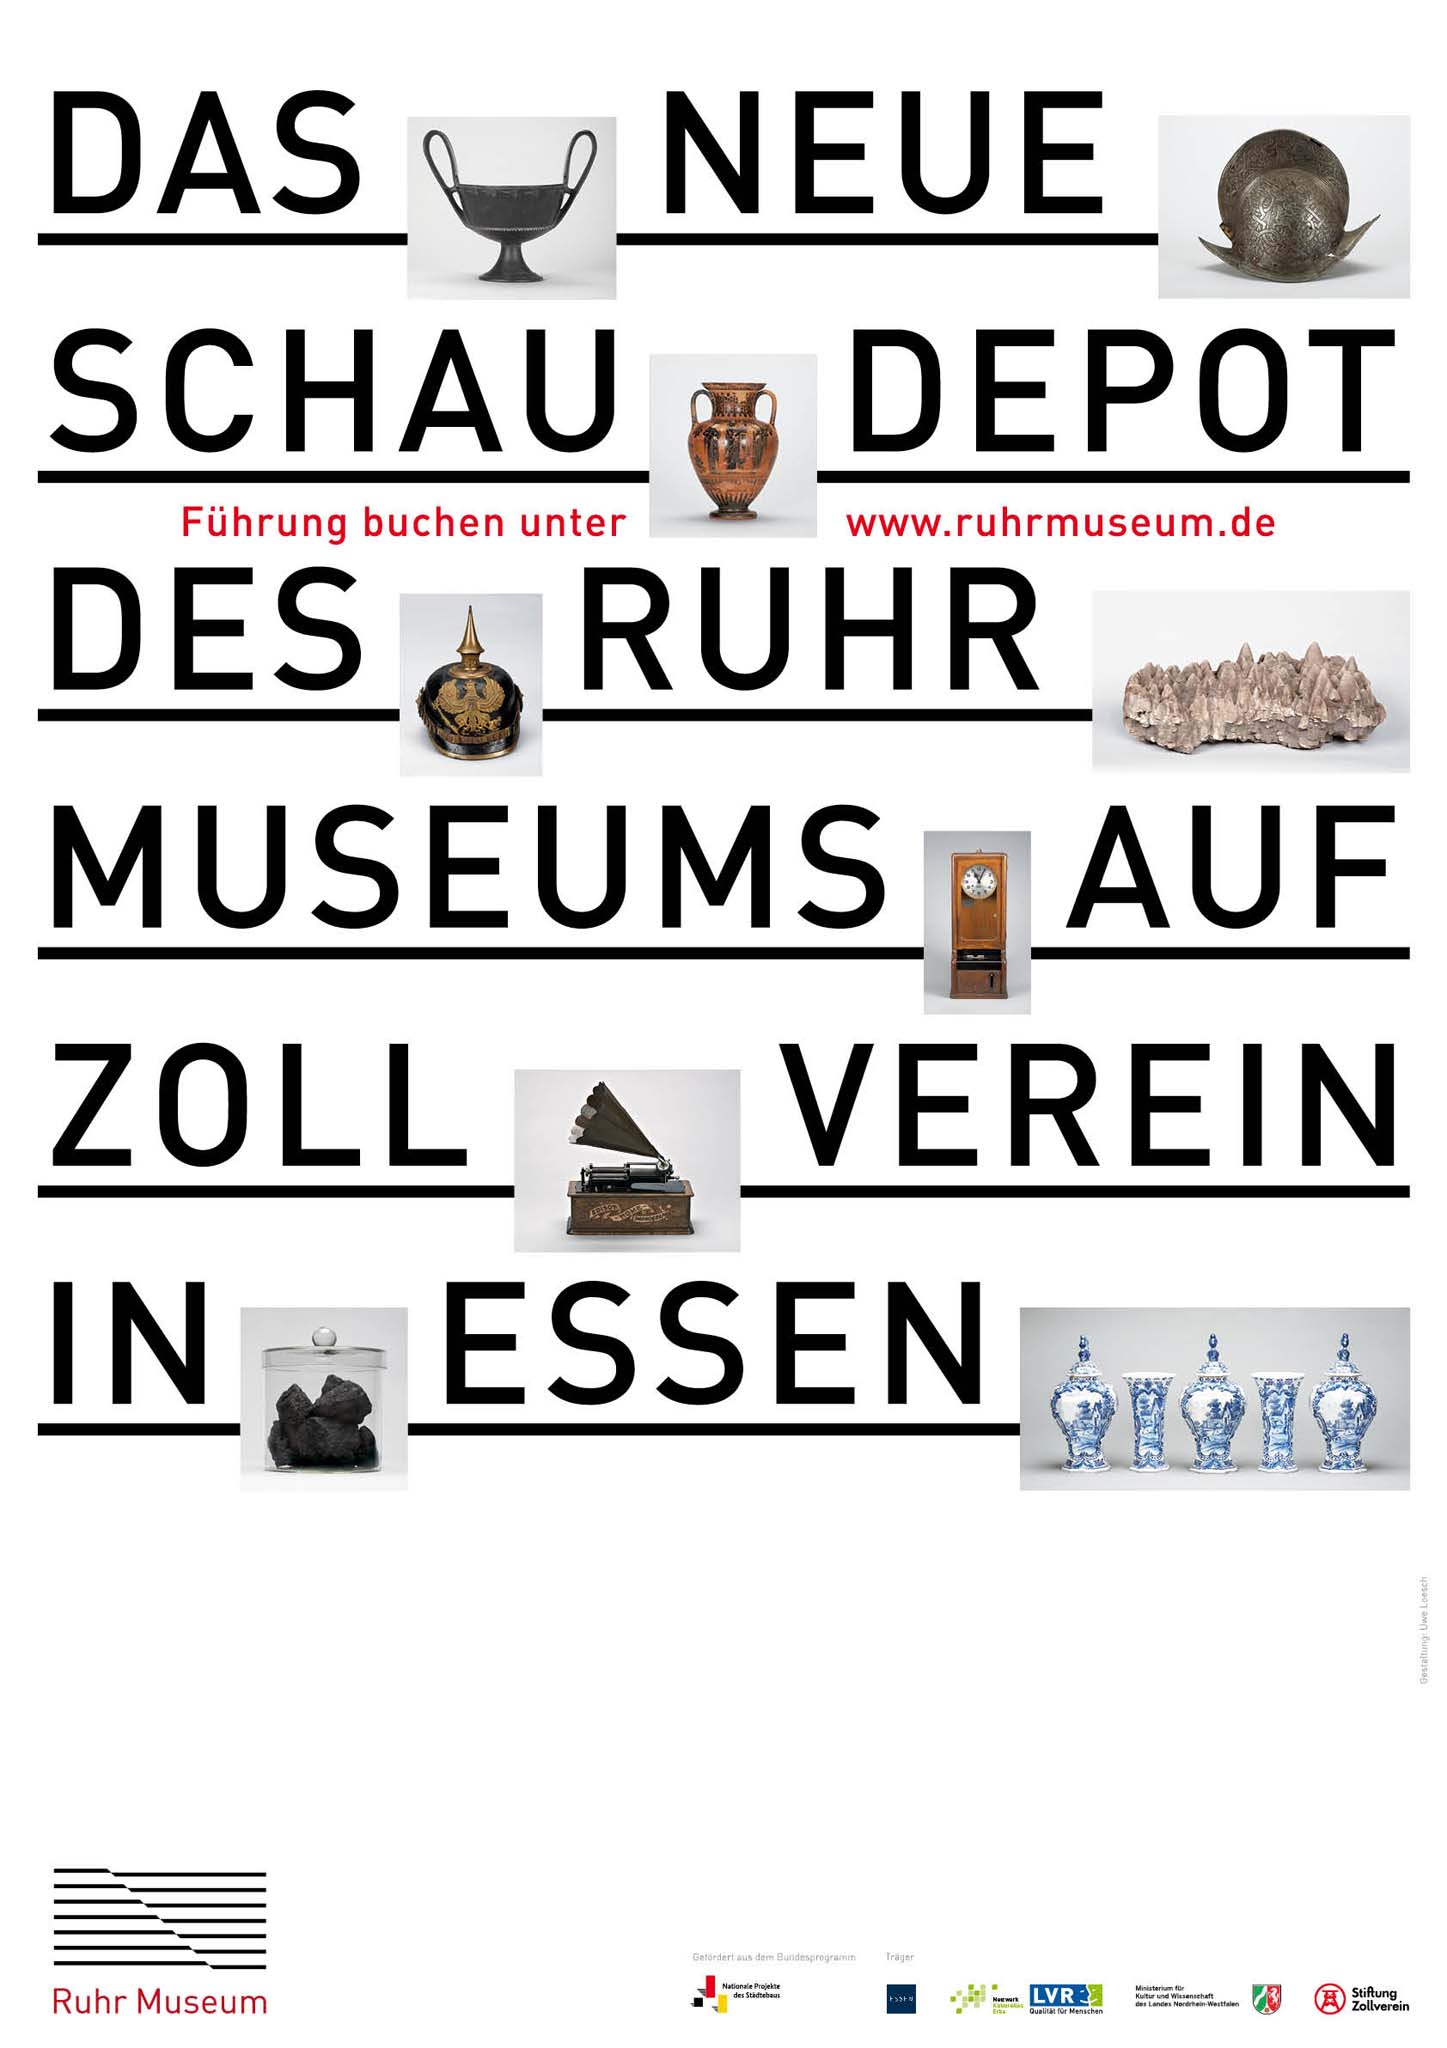 Seniorenführung durch das Schaudepot des Ruhr Museums